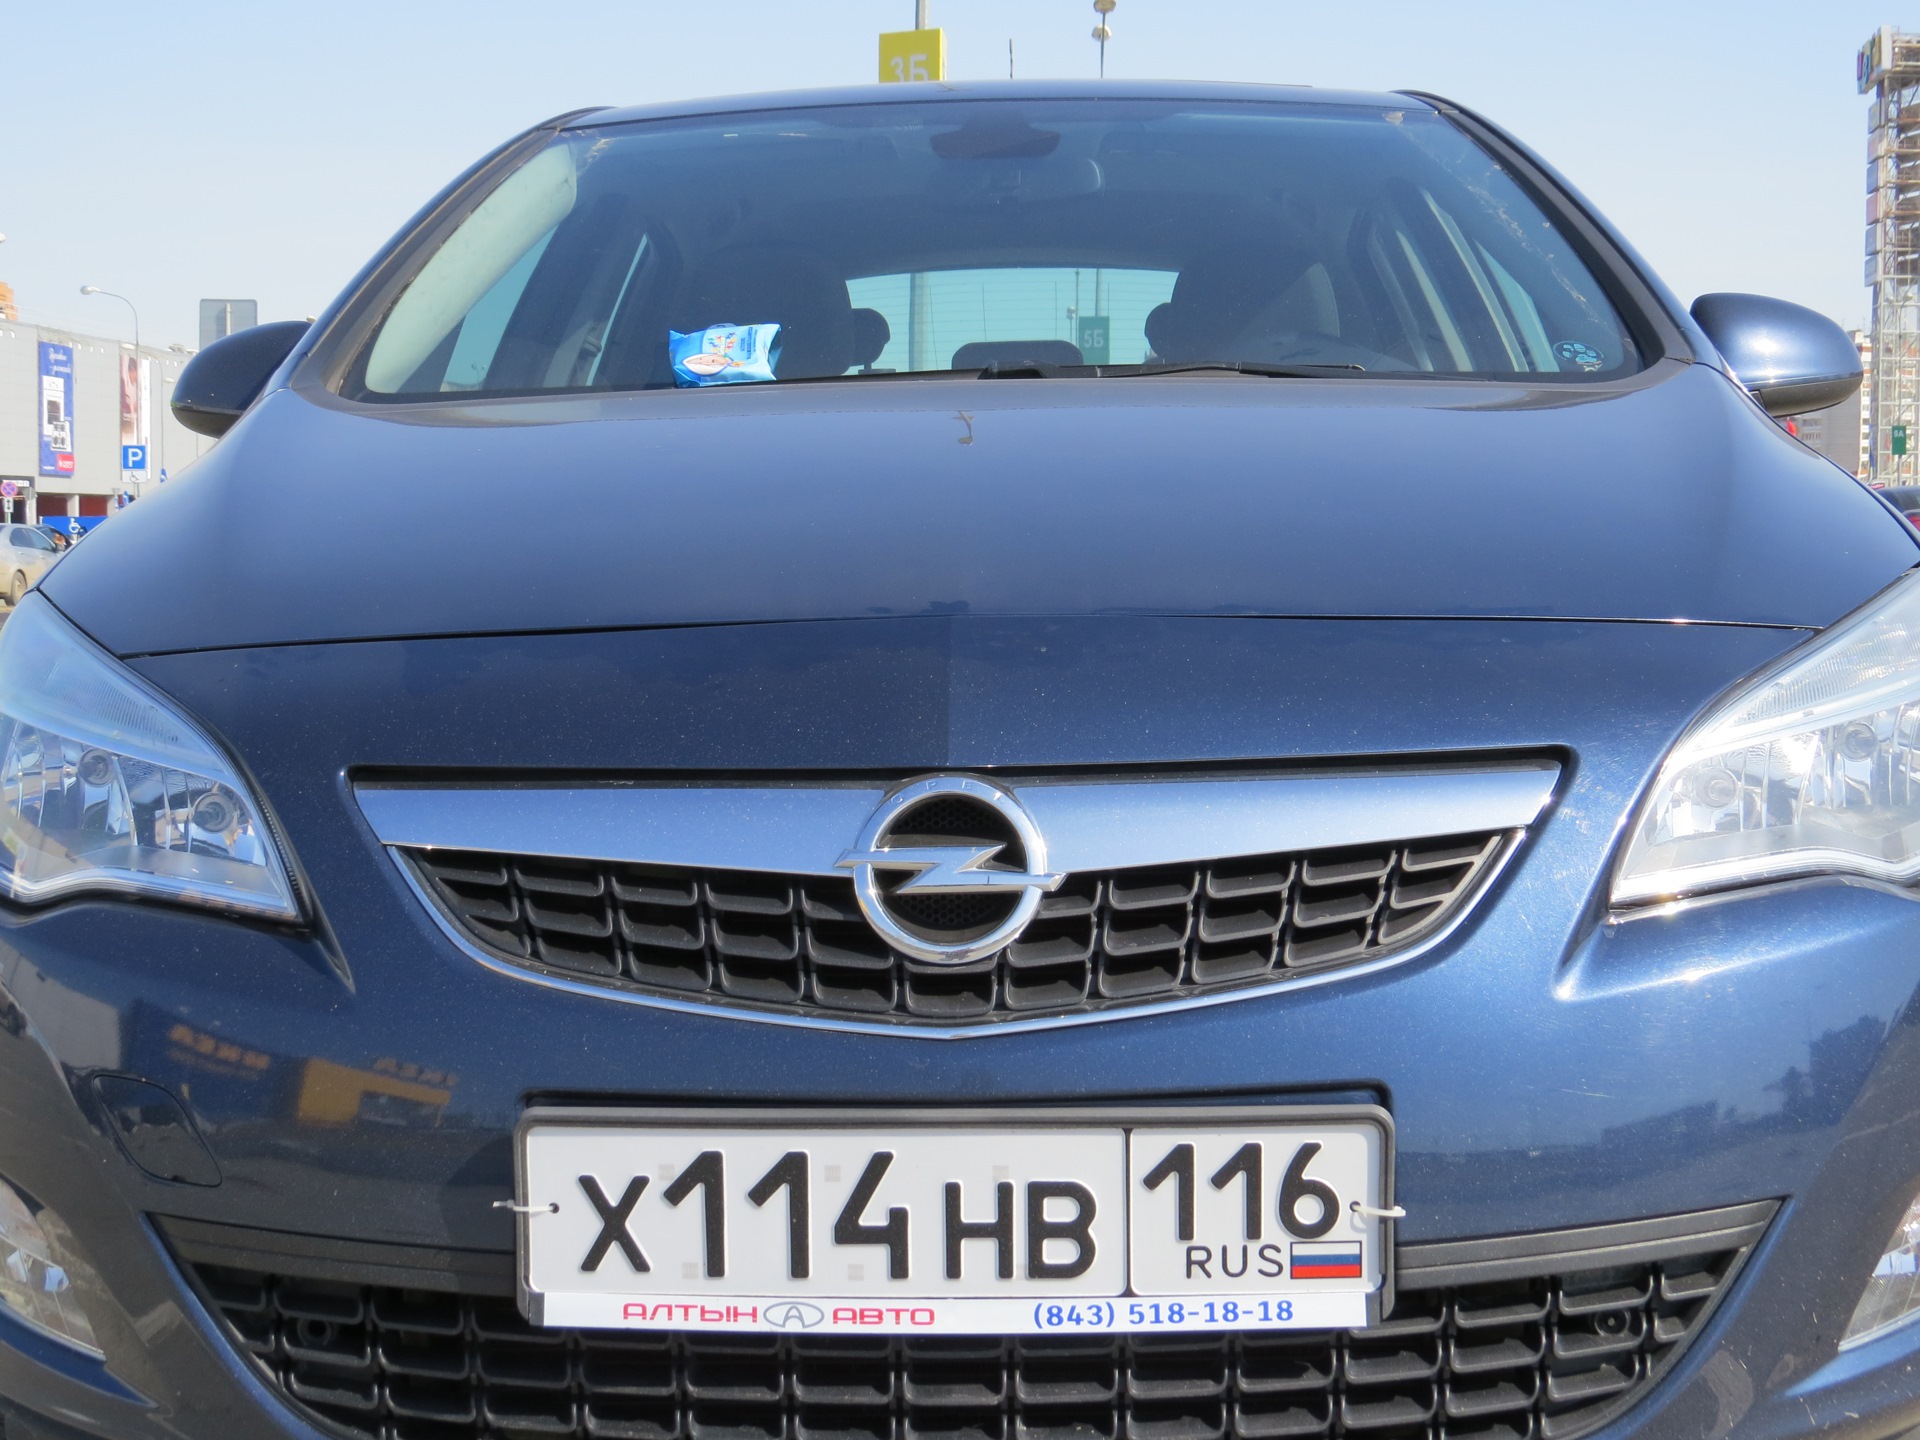 Зазор между капотом и бампером. Opel asta j зазор капота. Зазор капота и бампера Opel Astra j. Opel Astra j 12 год зазор капота.